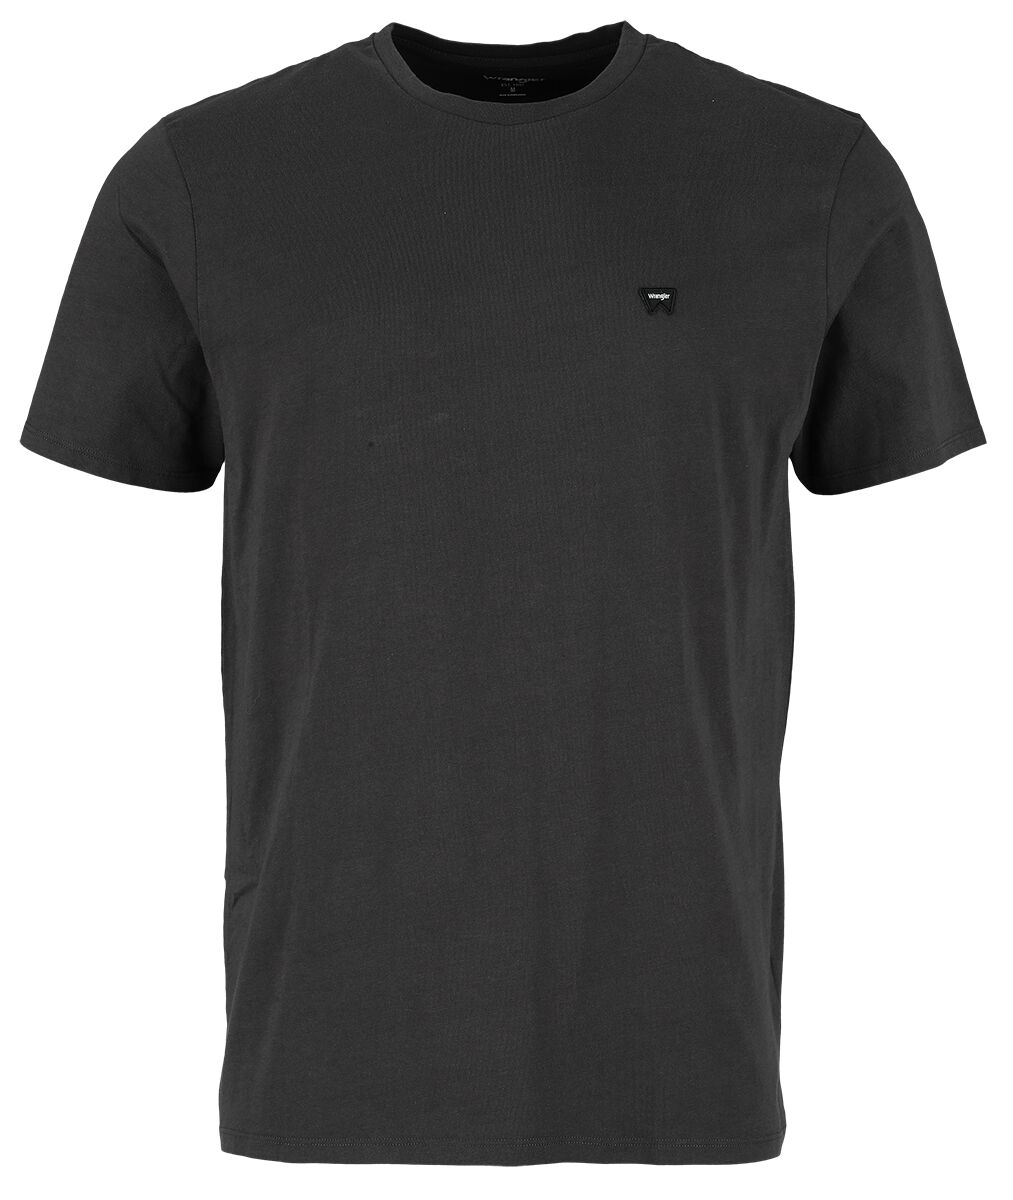 Wrangler T-Shirt - Sign Off Tee Faded Black - S bis XXL - für Männer - Größe XXL - schwarz